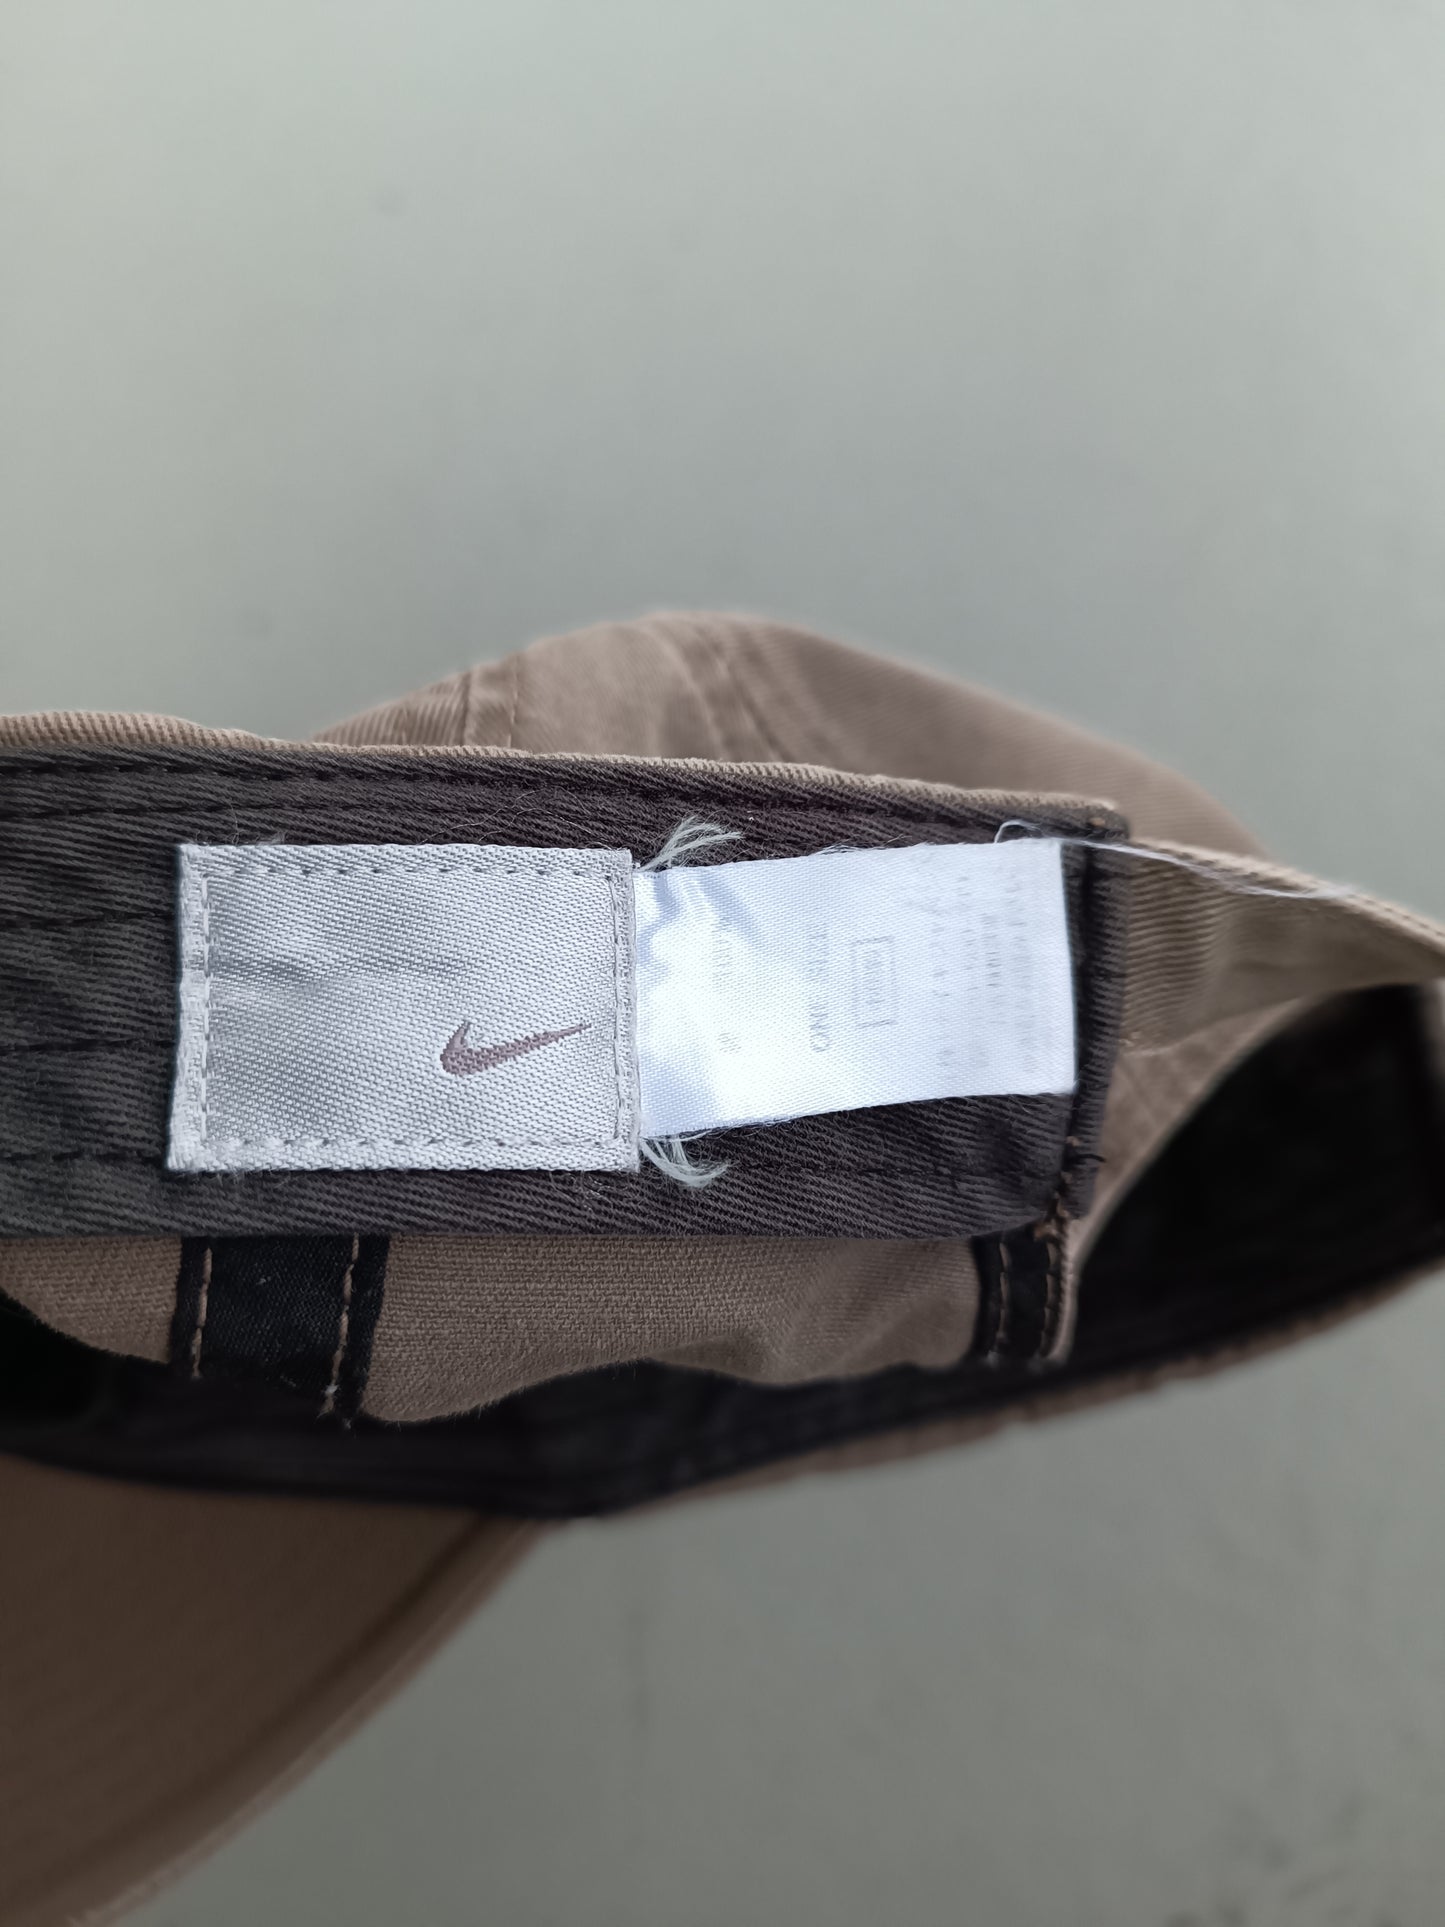 Nike brown spellout cap